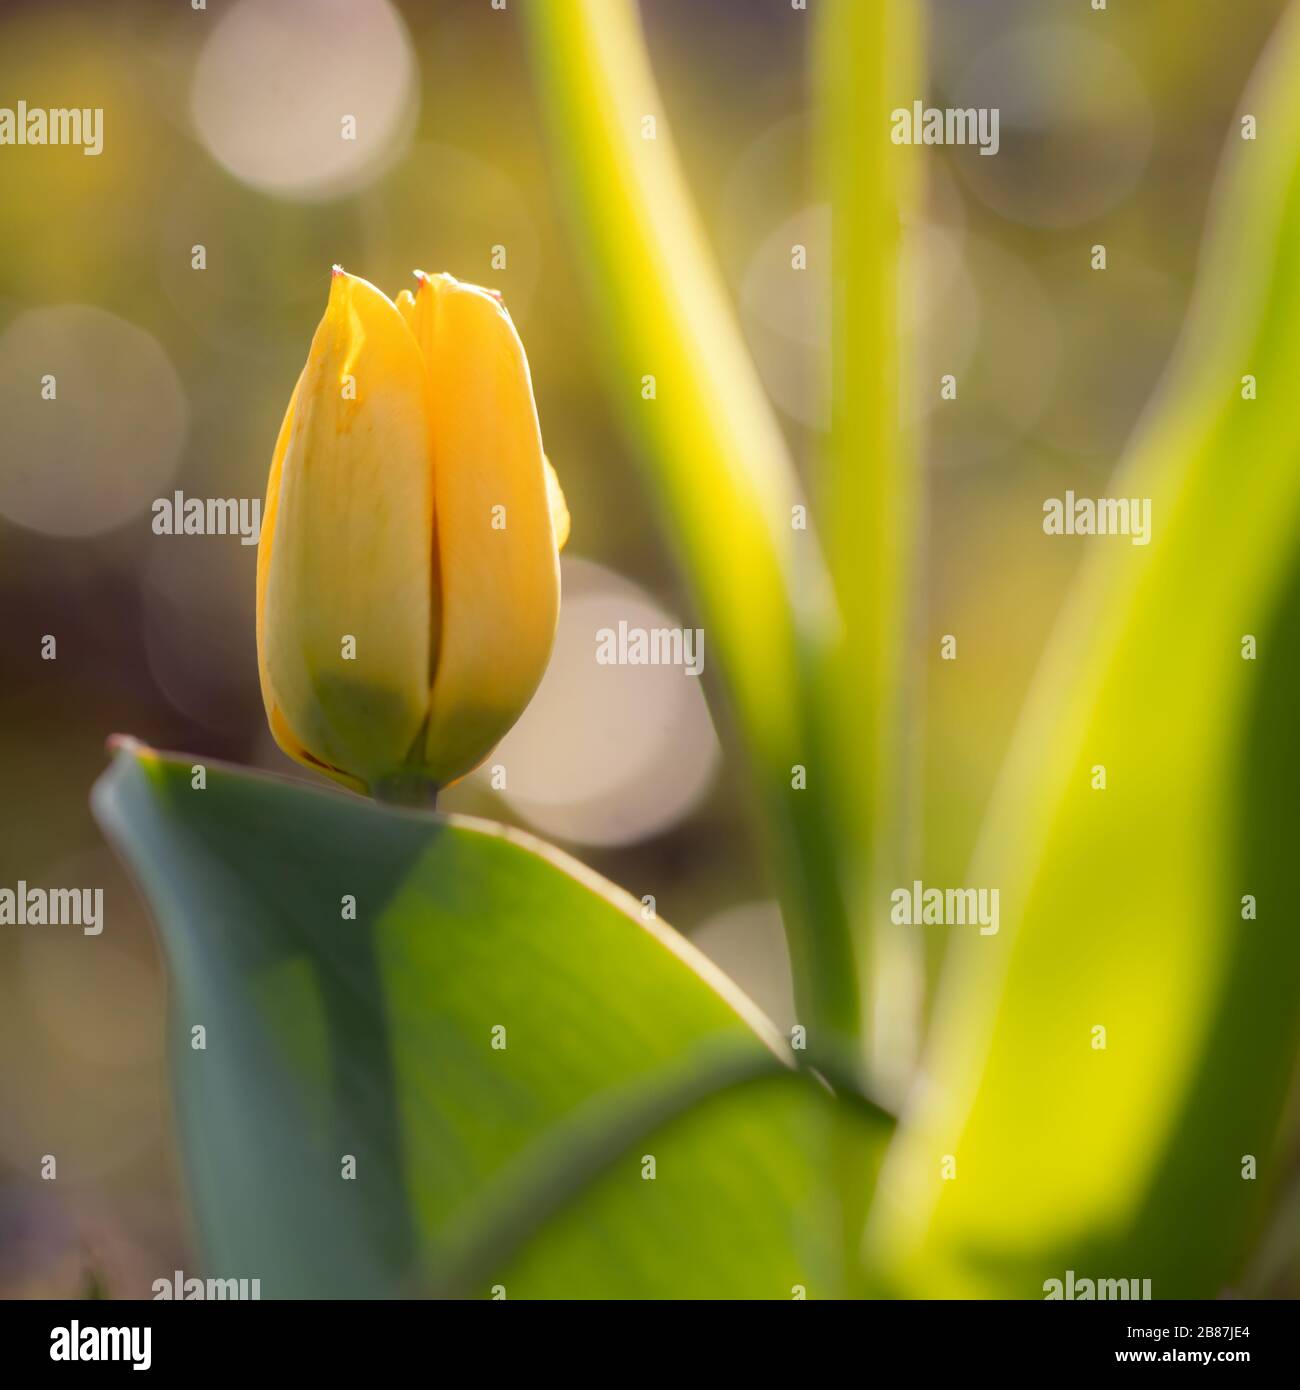 Germoglio tulipano giallo (famiglia di giglio, Liliaceae) in primavera, Germania. Fotografia retroilluminata Gelbe Tulpenknospe (Lilienfamilie, Liliaceae) im Frühjahr, Deutschla Foto Stock